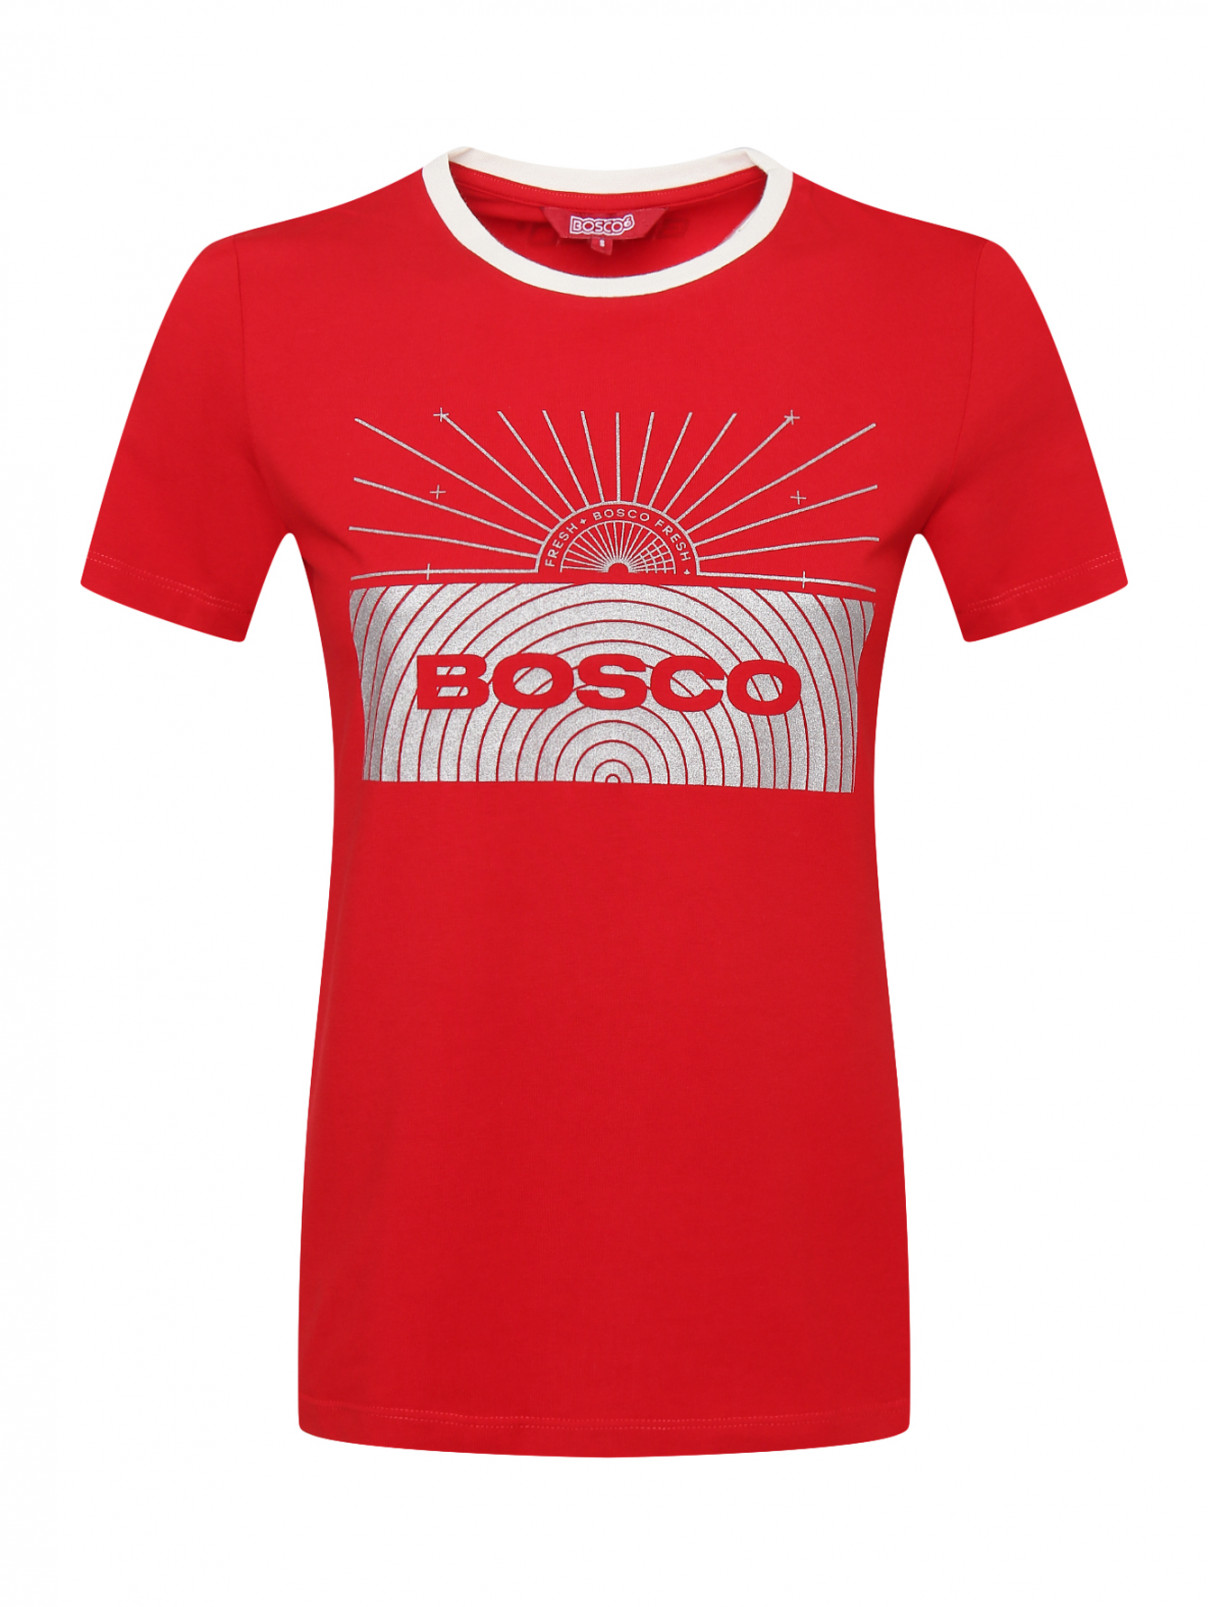 Трикотажная футболка из хлопка с аппликацией BOSCO  –  Общий вид  – Цвет:  Красный